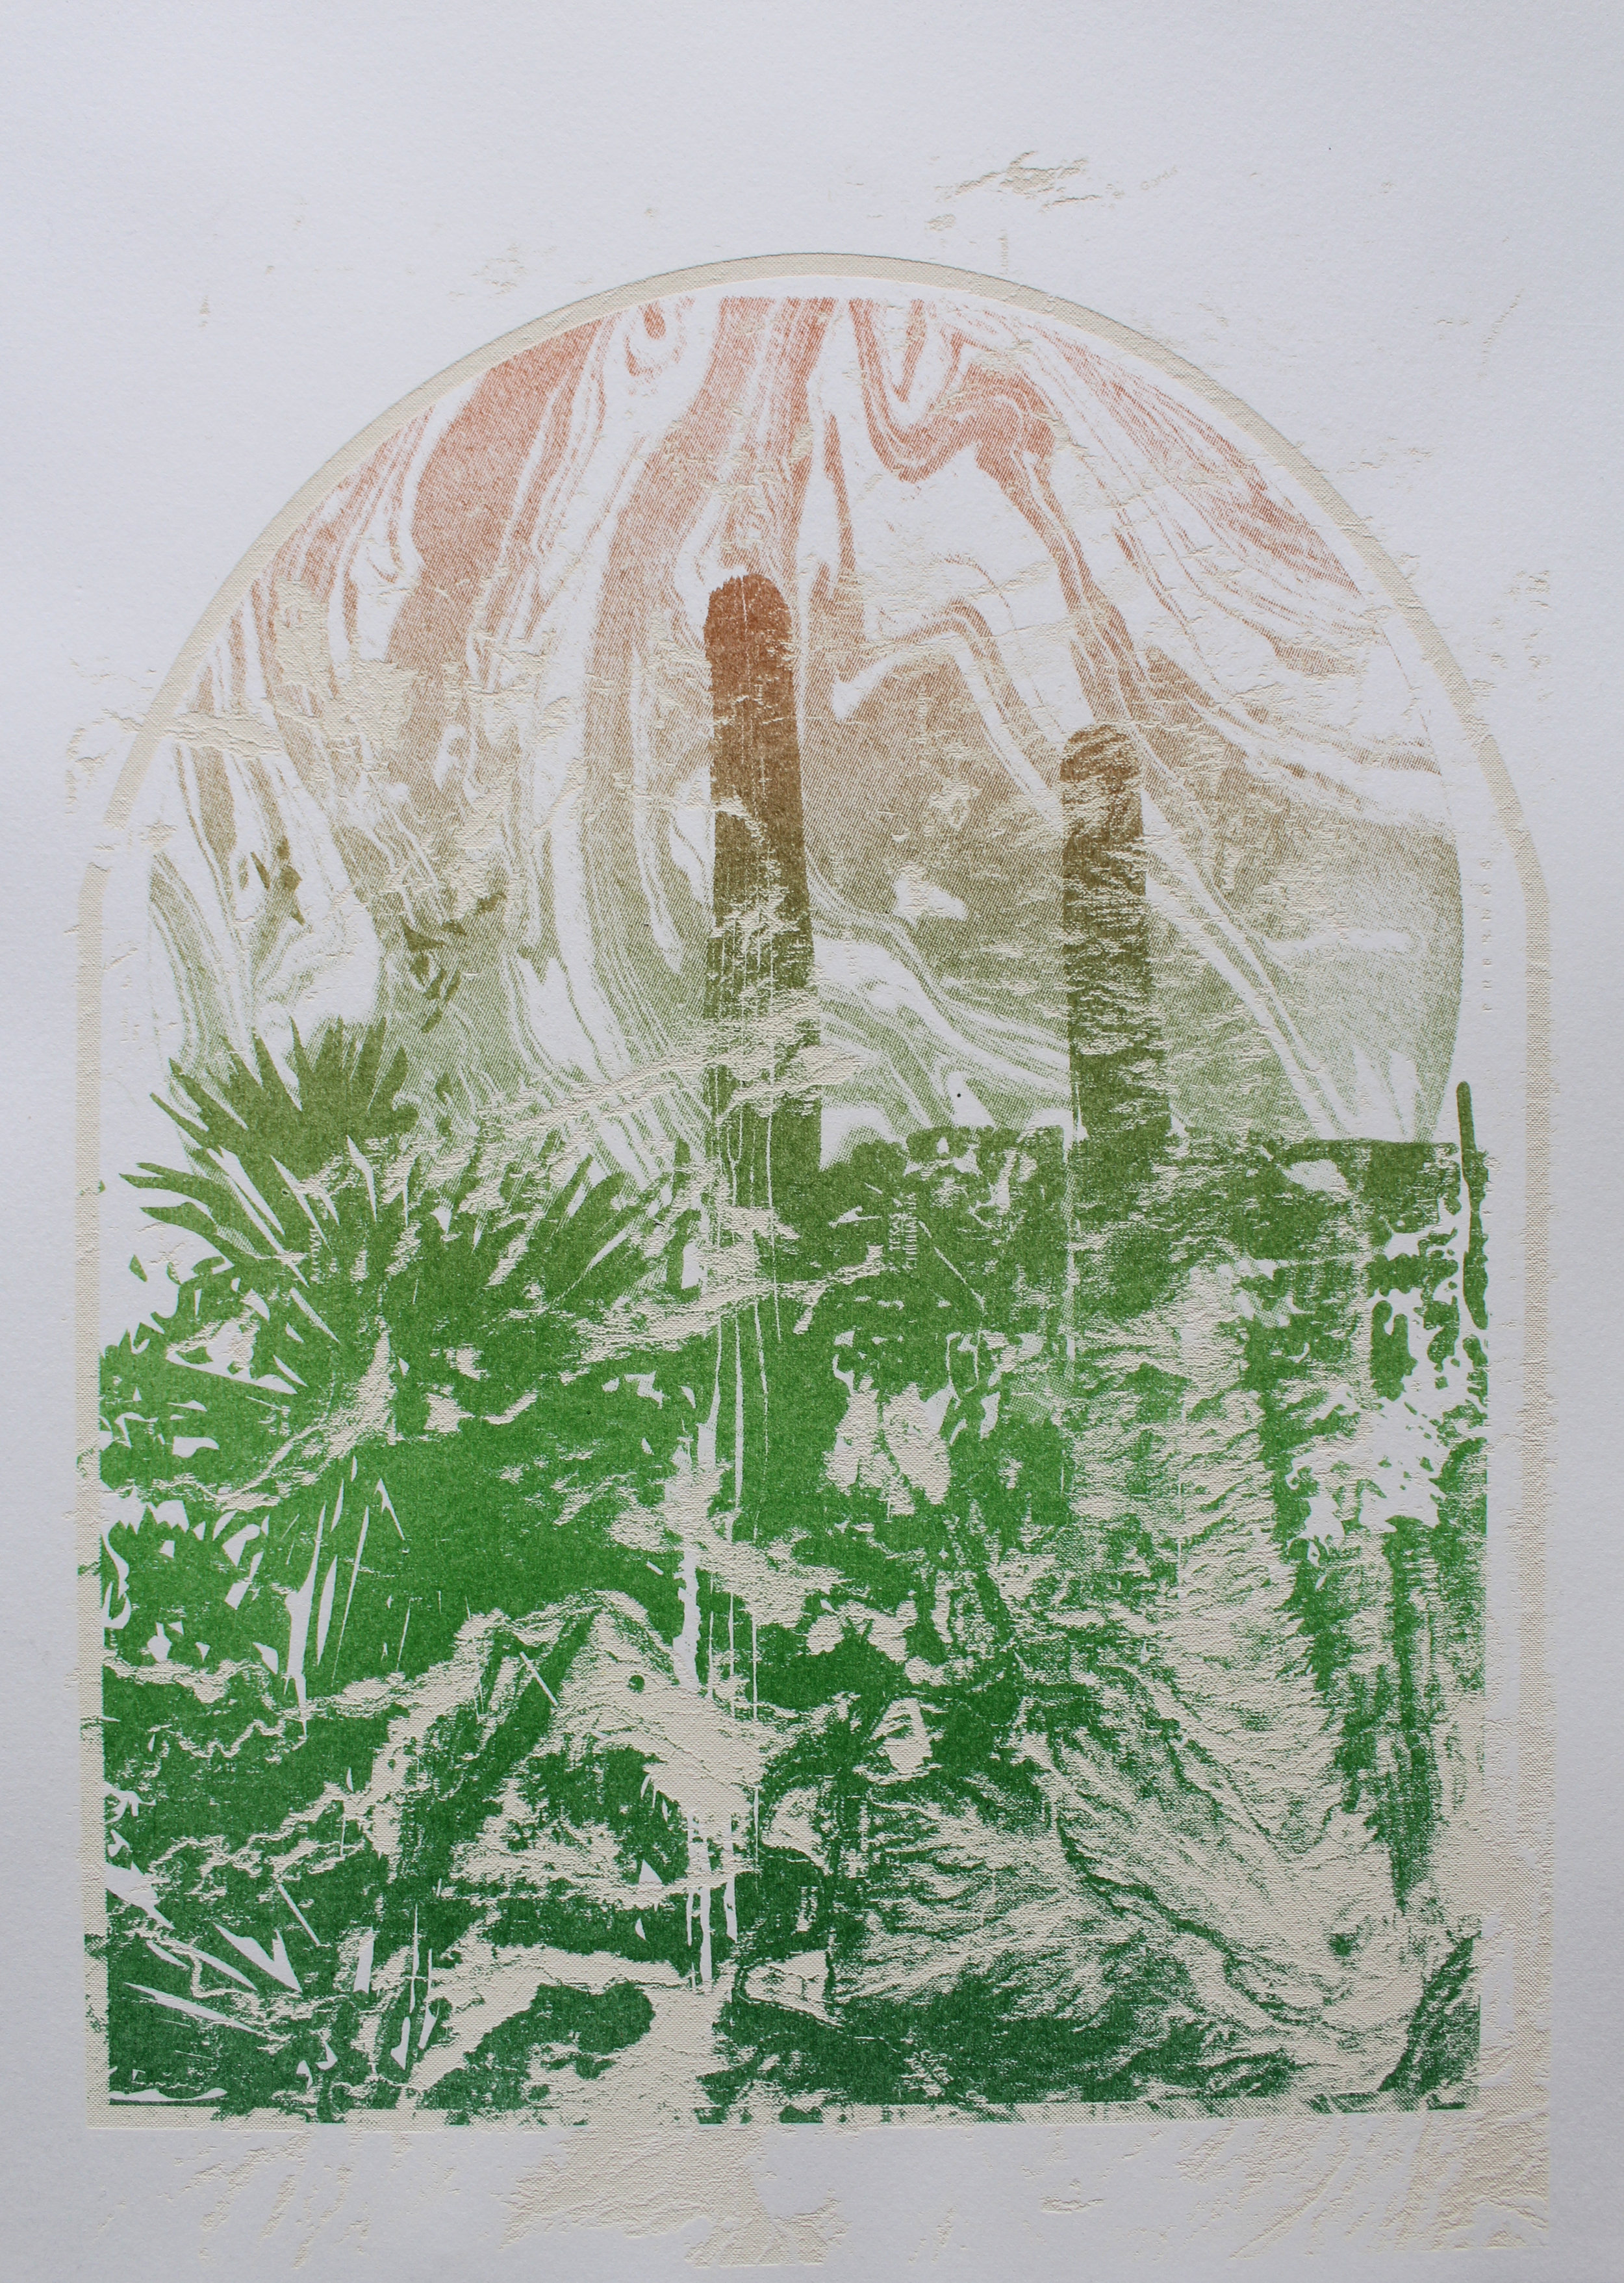   Border Altarpiece , laser engraved lithograph, 11 x 14”, variant, 2018.  SGC International Member Exchange 2018: Altered Landscapes 